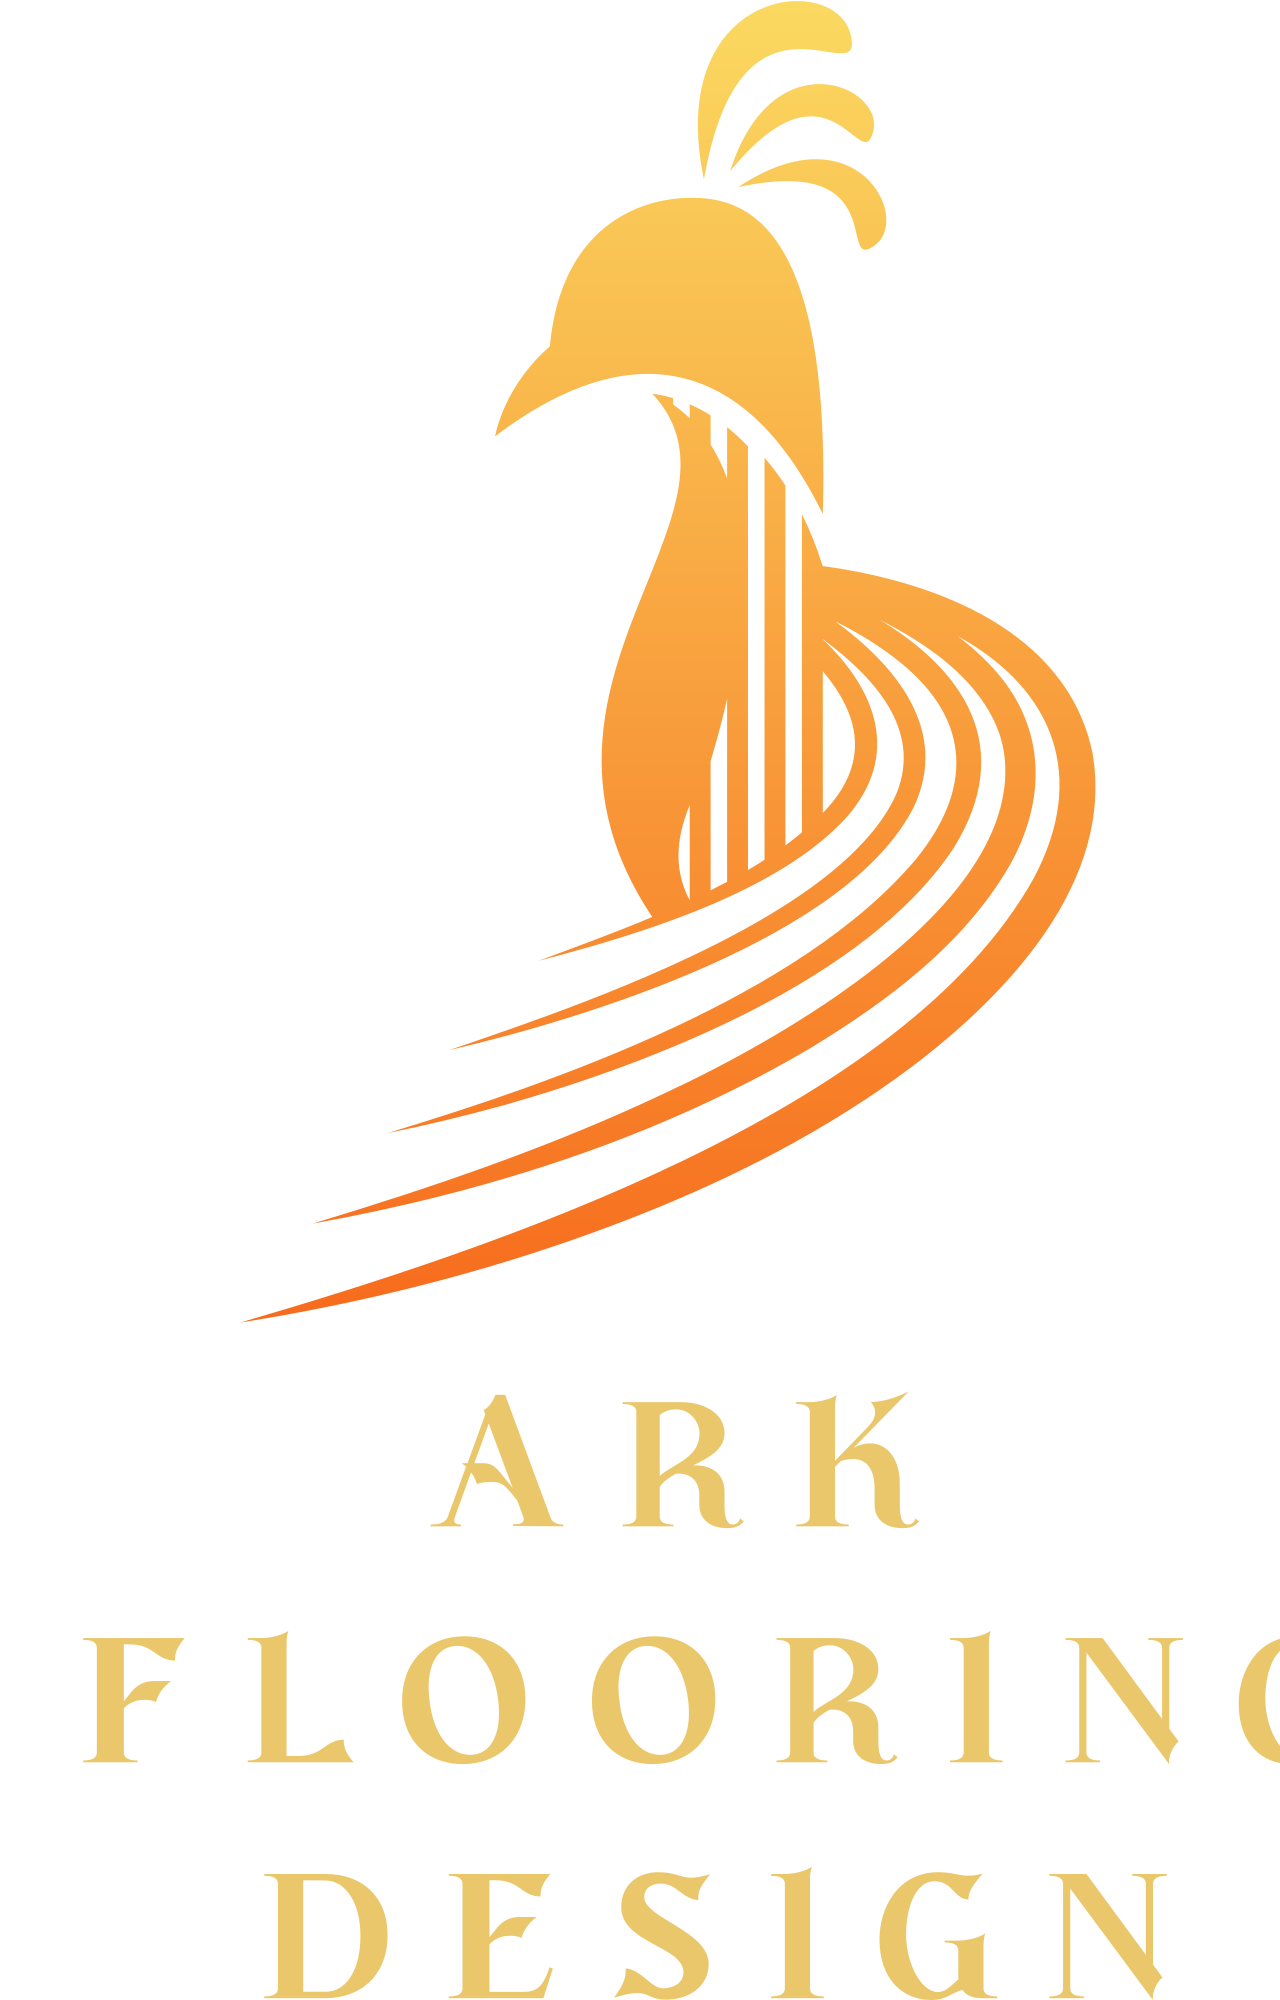             Ark 
            FLOORING
            DESIGN's logo